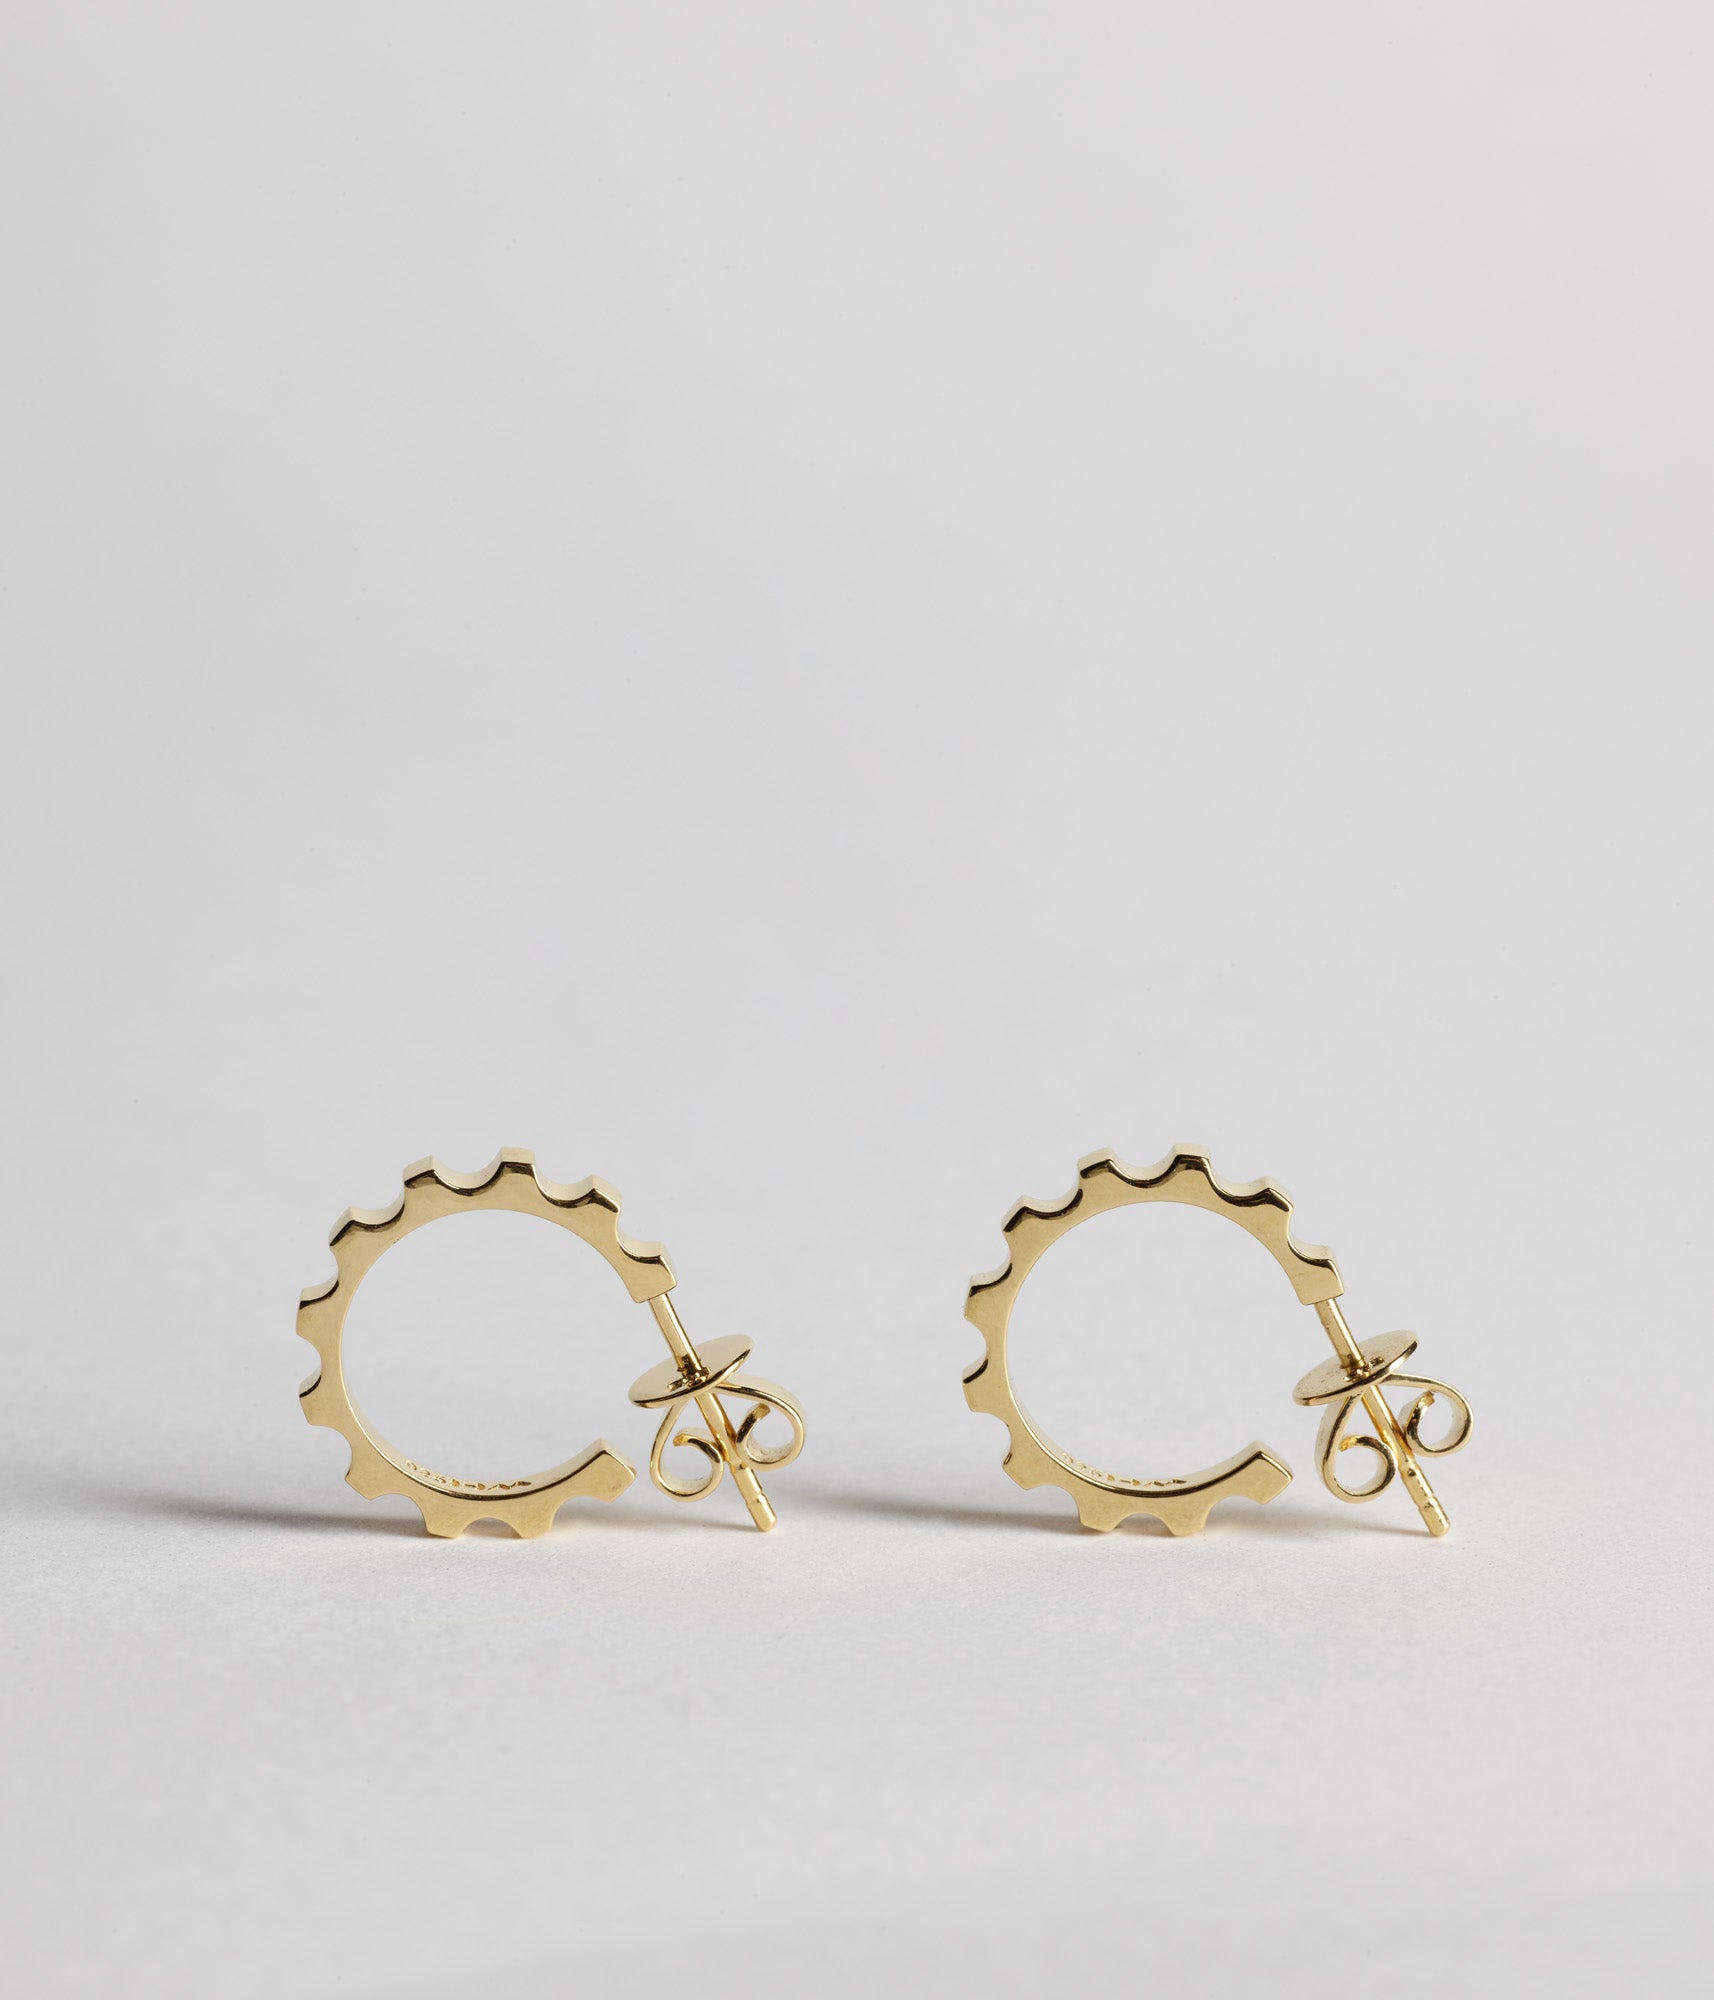 Parmentier Hoop Earrings, Small  - Gold Vermeil